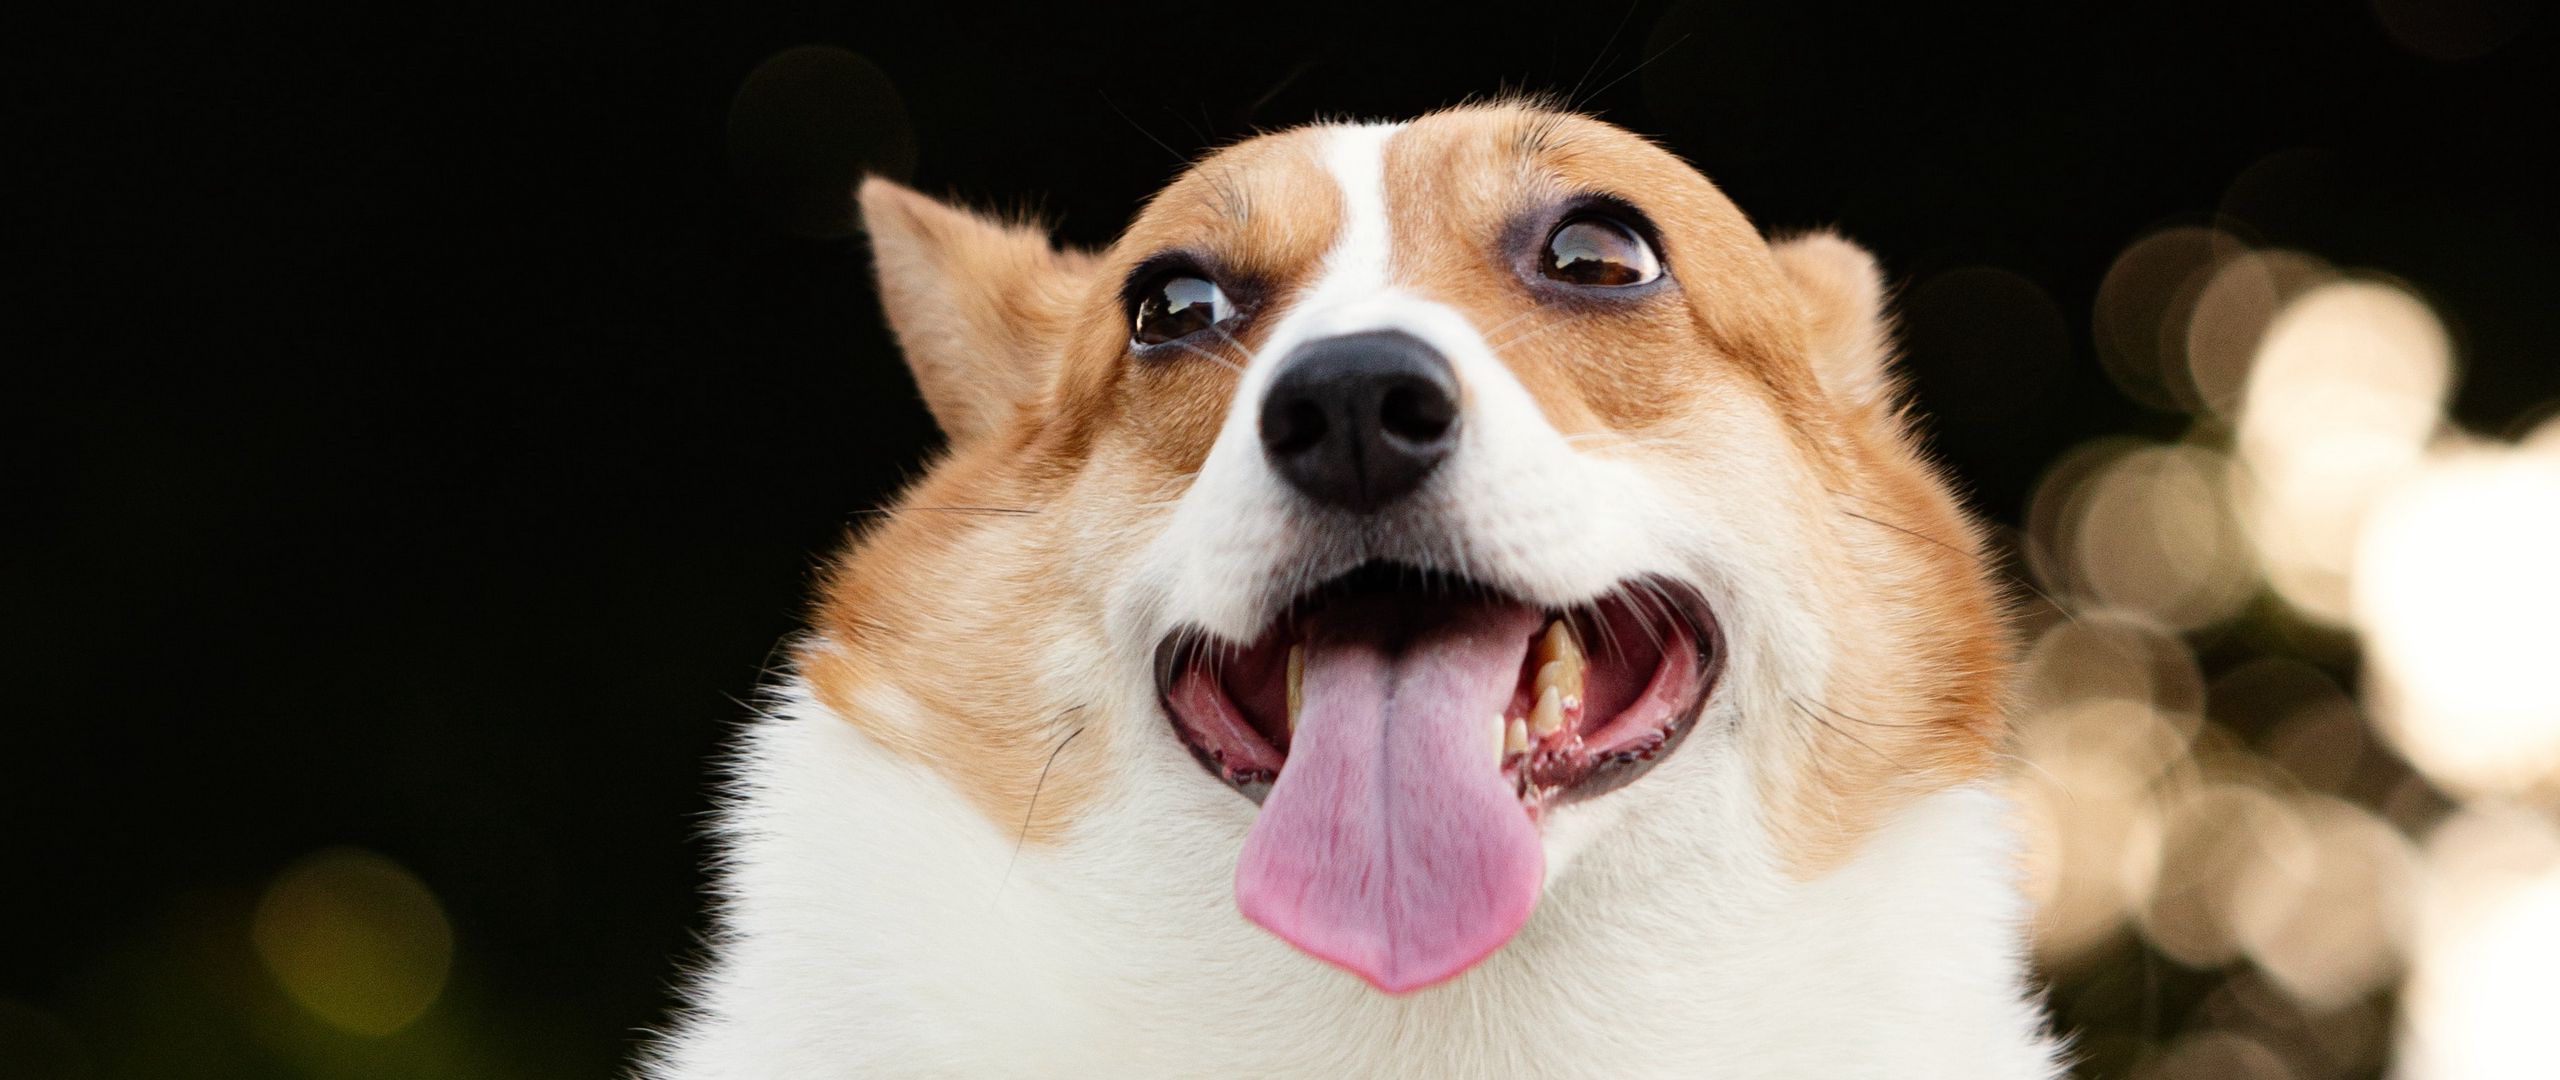 Wallpaper Corgi Dog Funny Protruding Tongue